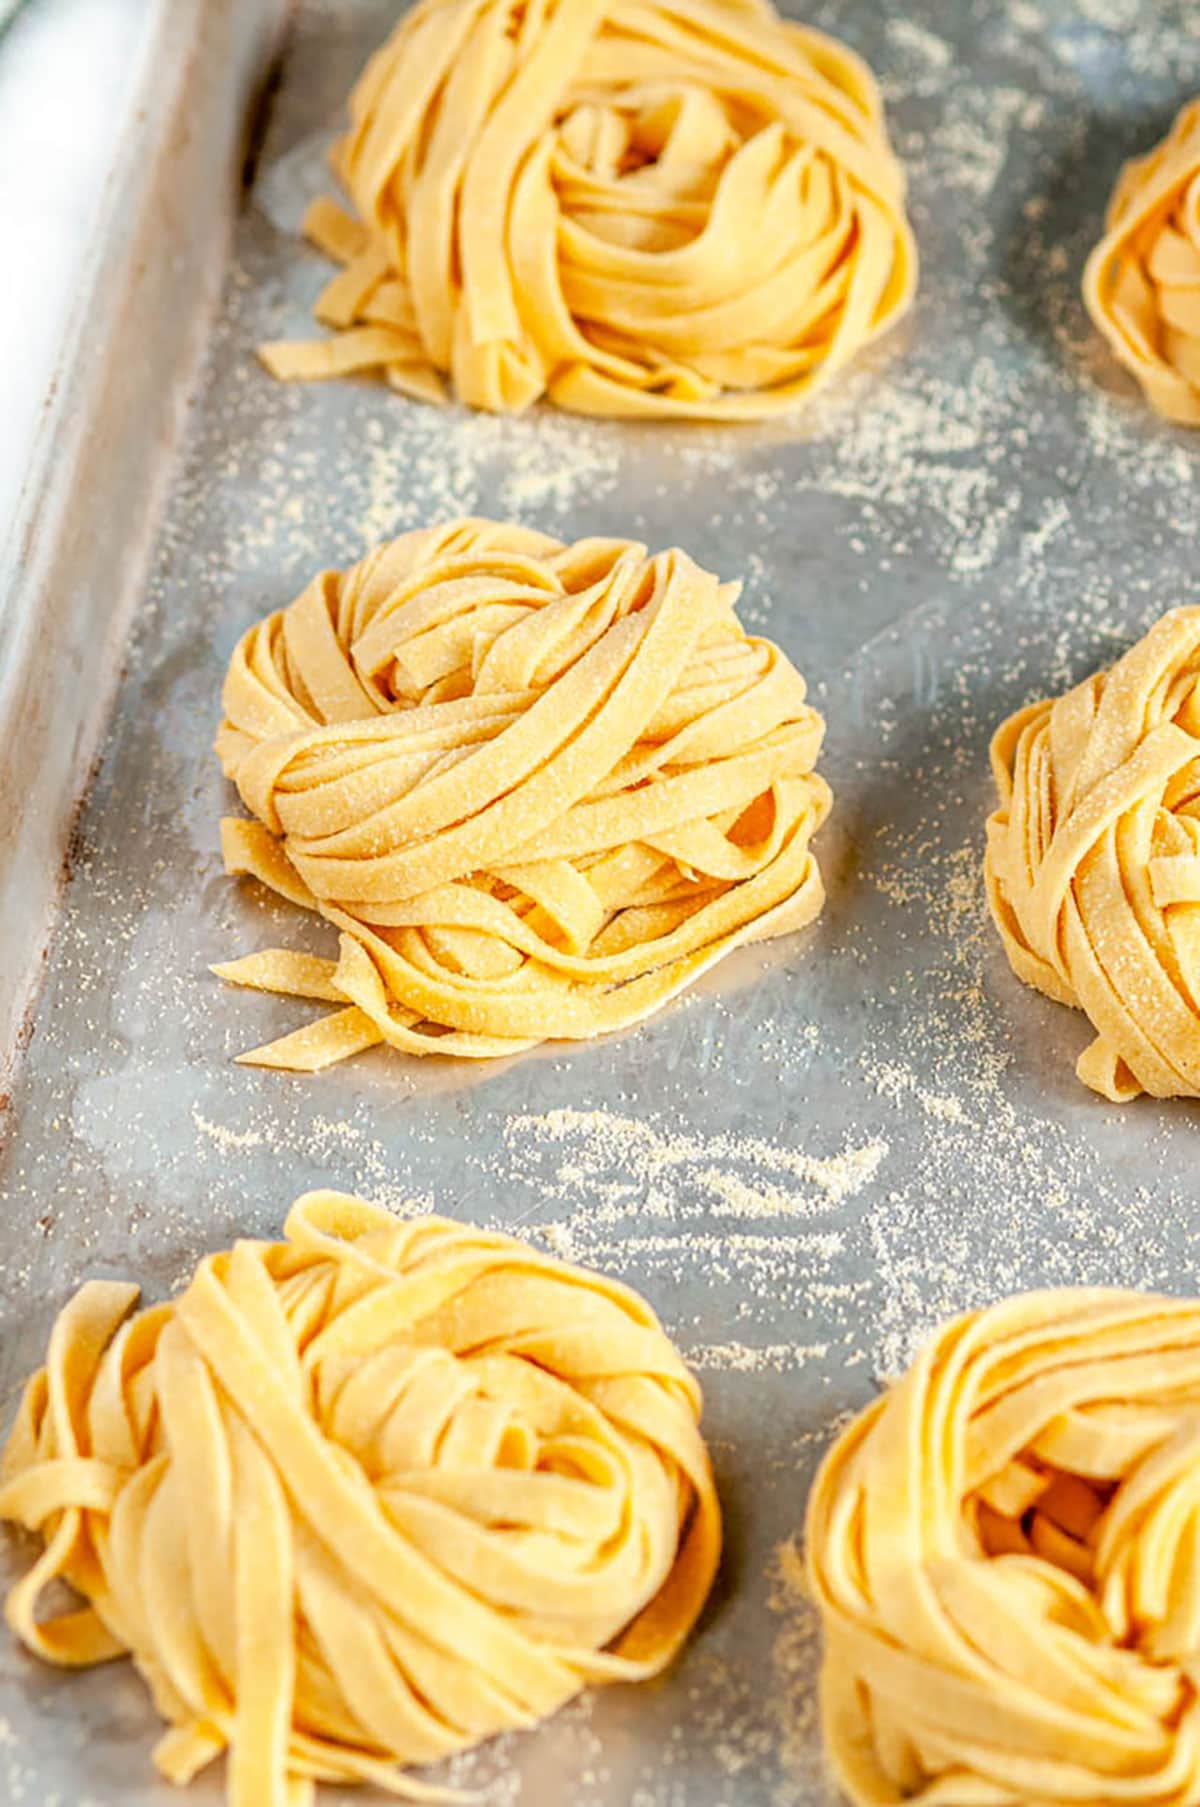 https://www.aberdeenskitchen.com/wp-content/uploads/2020/09/Homemade-Pasta-Dough-Recipe-3-FI-1200.jpg